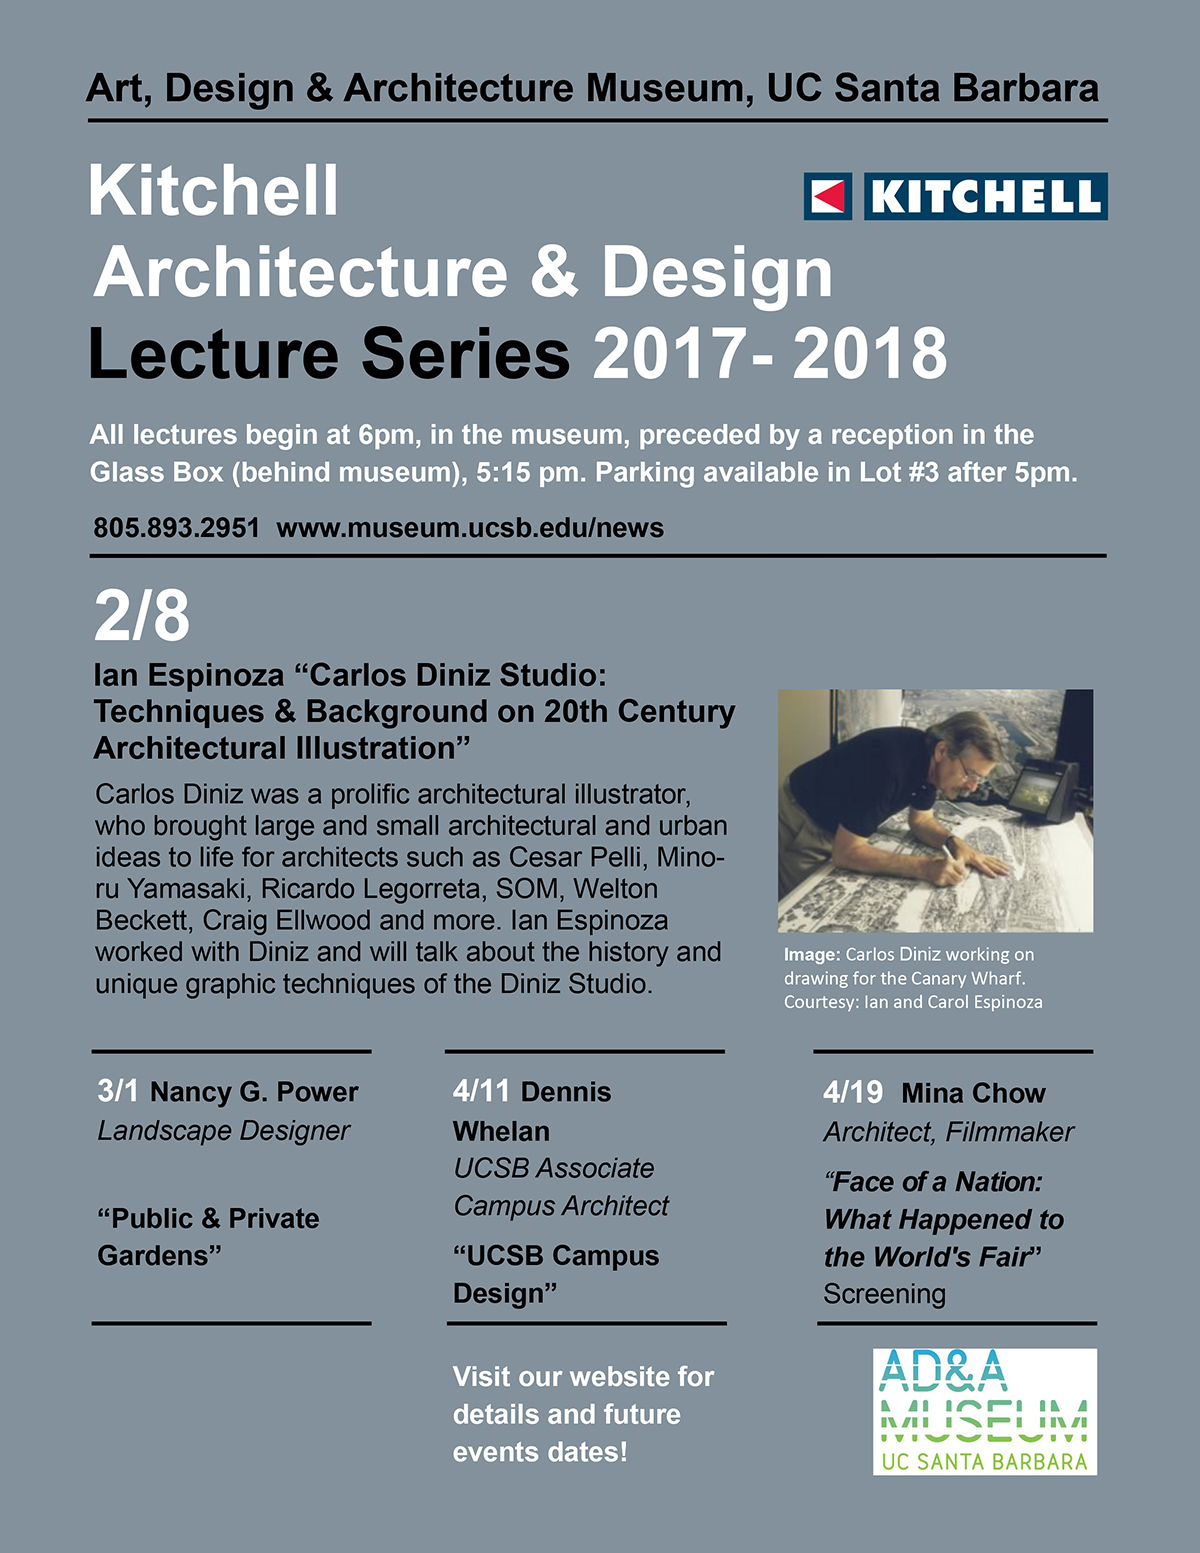 Kitchell Architecture & Design Lecture Series - Ian Espinoza